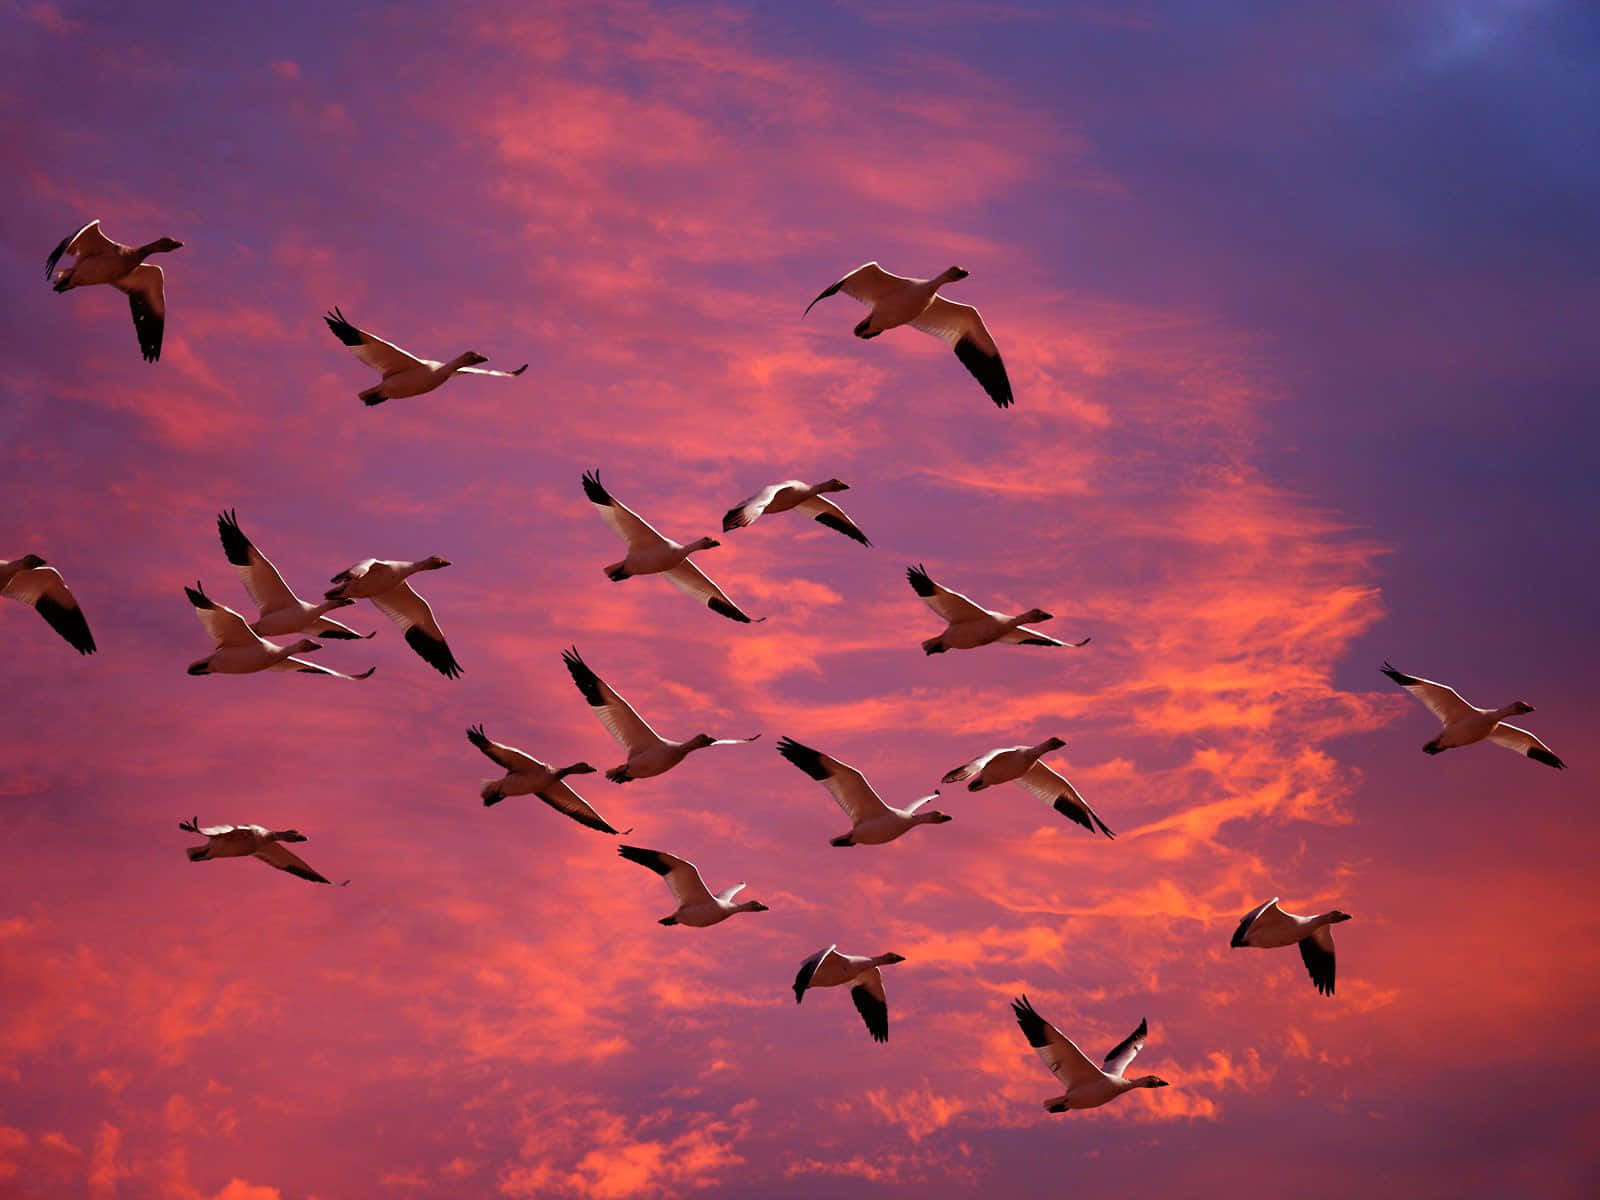 Uccellivolanti - Migrating Snow Geese. Sfondo